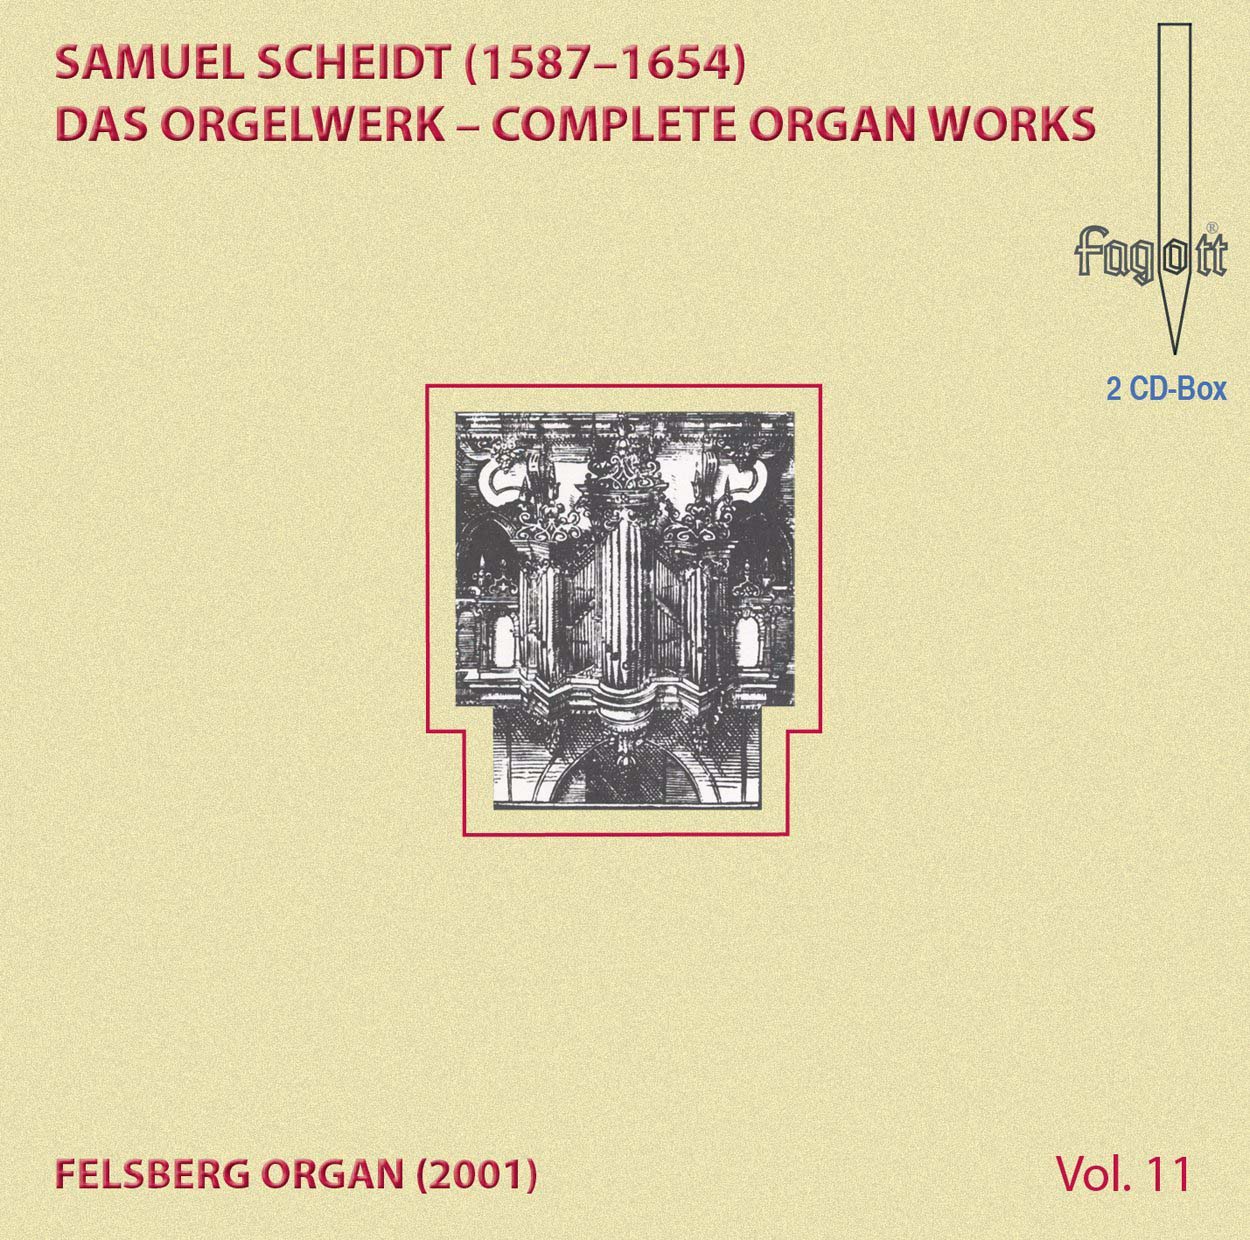 Audio Cd Samuel Scheidt - Das Orgelwerk 11 (2 Cd) NUOVO SIGILLATO, EDIZIONE DEL 25/11/2016 SUBITO DISPONIBILE